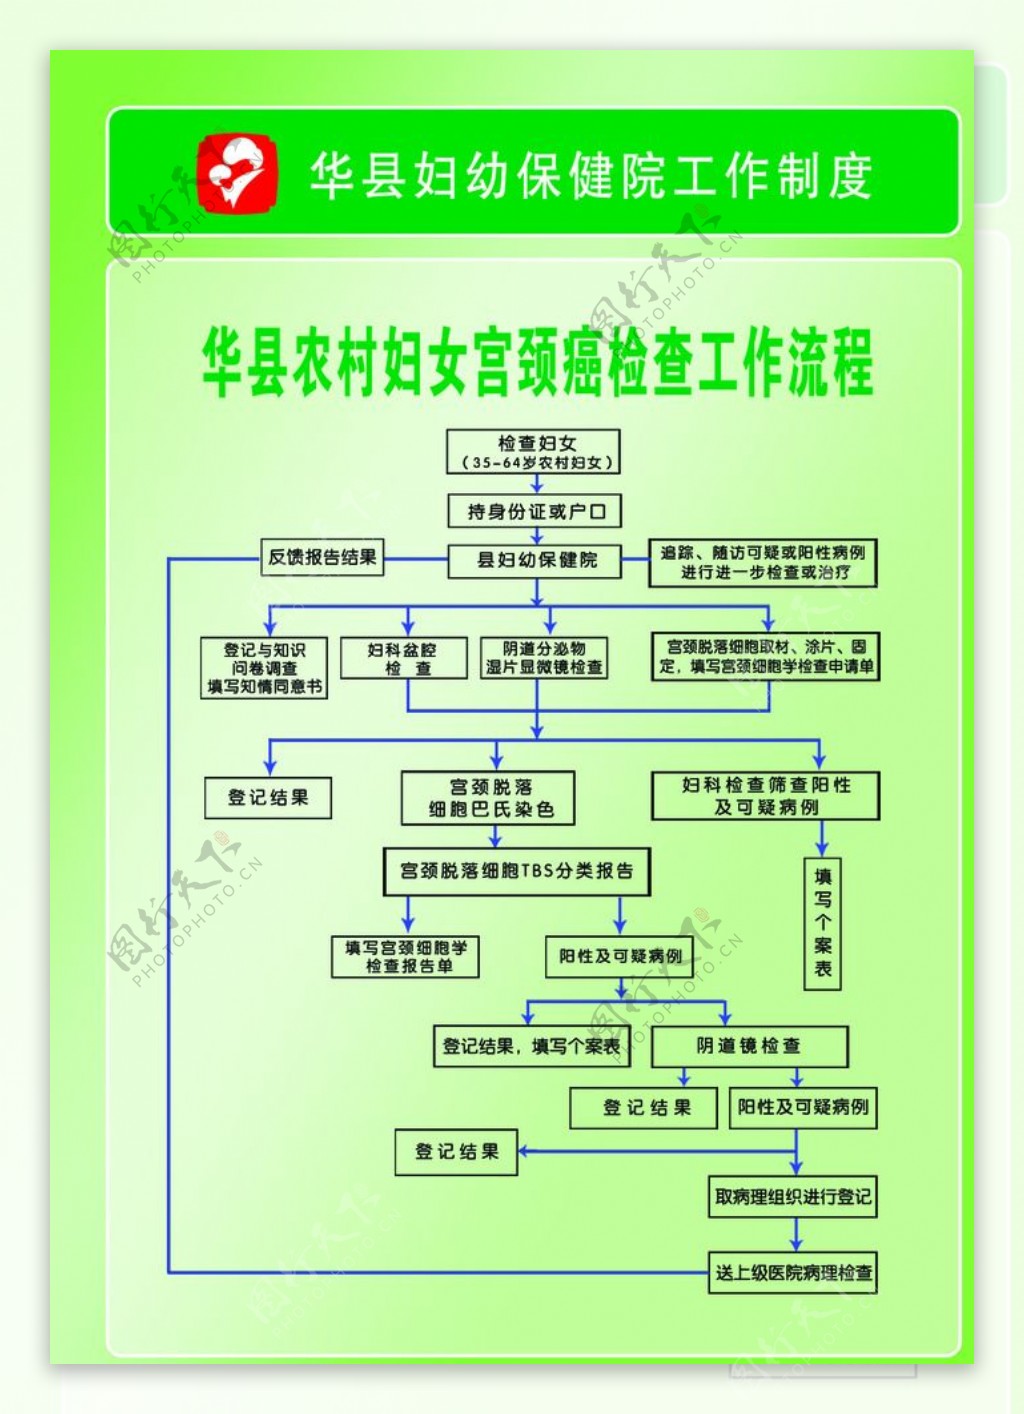 华县农村妇女宫颈癌检查工作流程